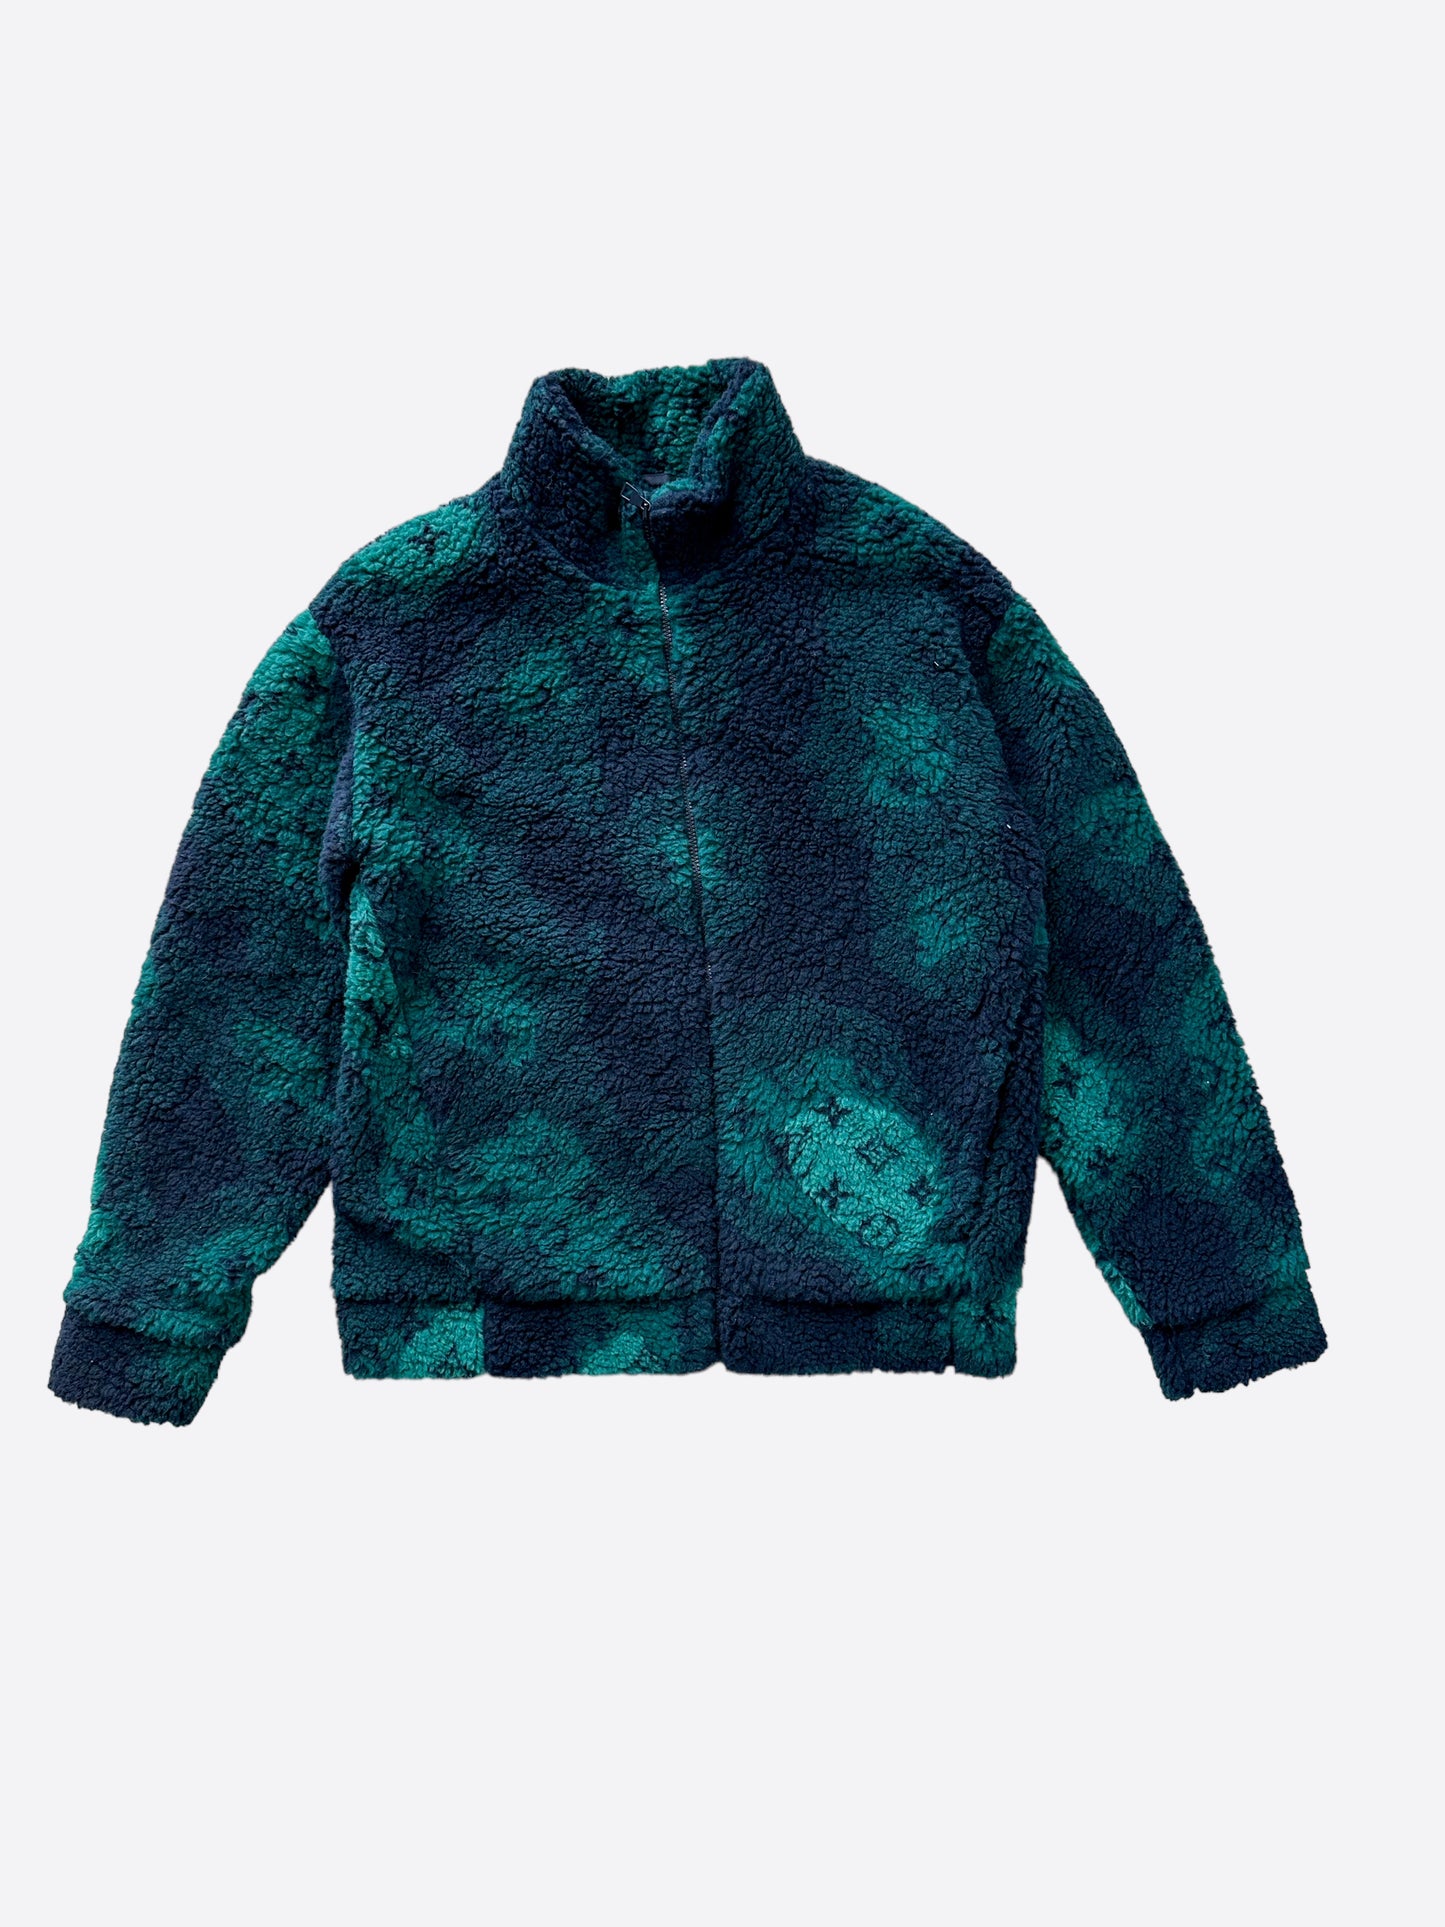 ORDER] Louis Vuitton Camo Monogram Fleece Zip Up Jacket